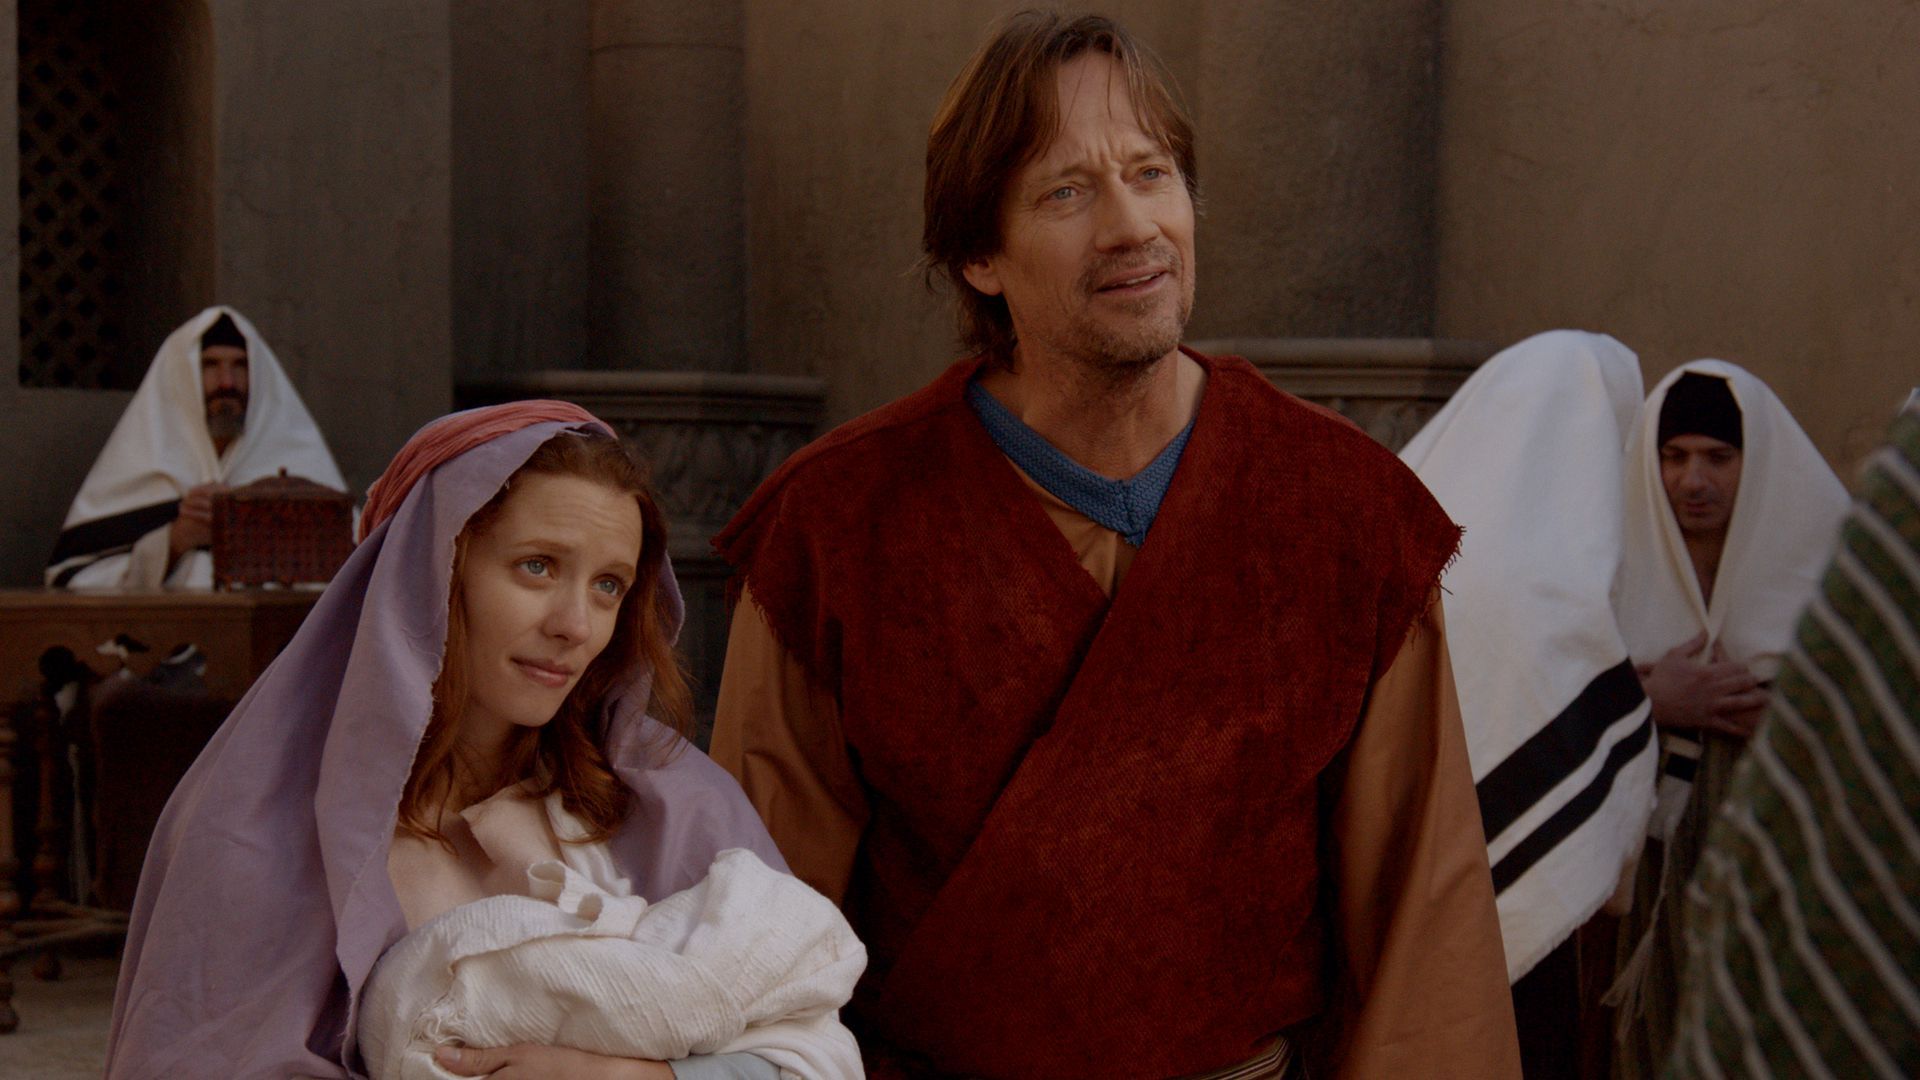 Kadr z filmu "Józef i Maryja"